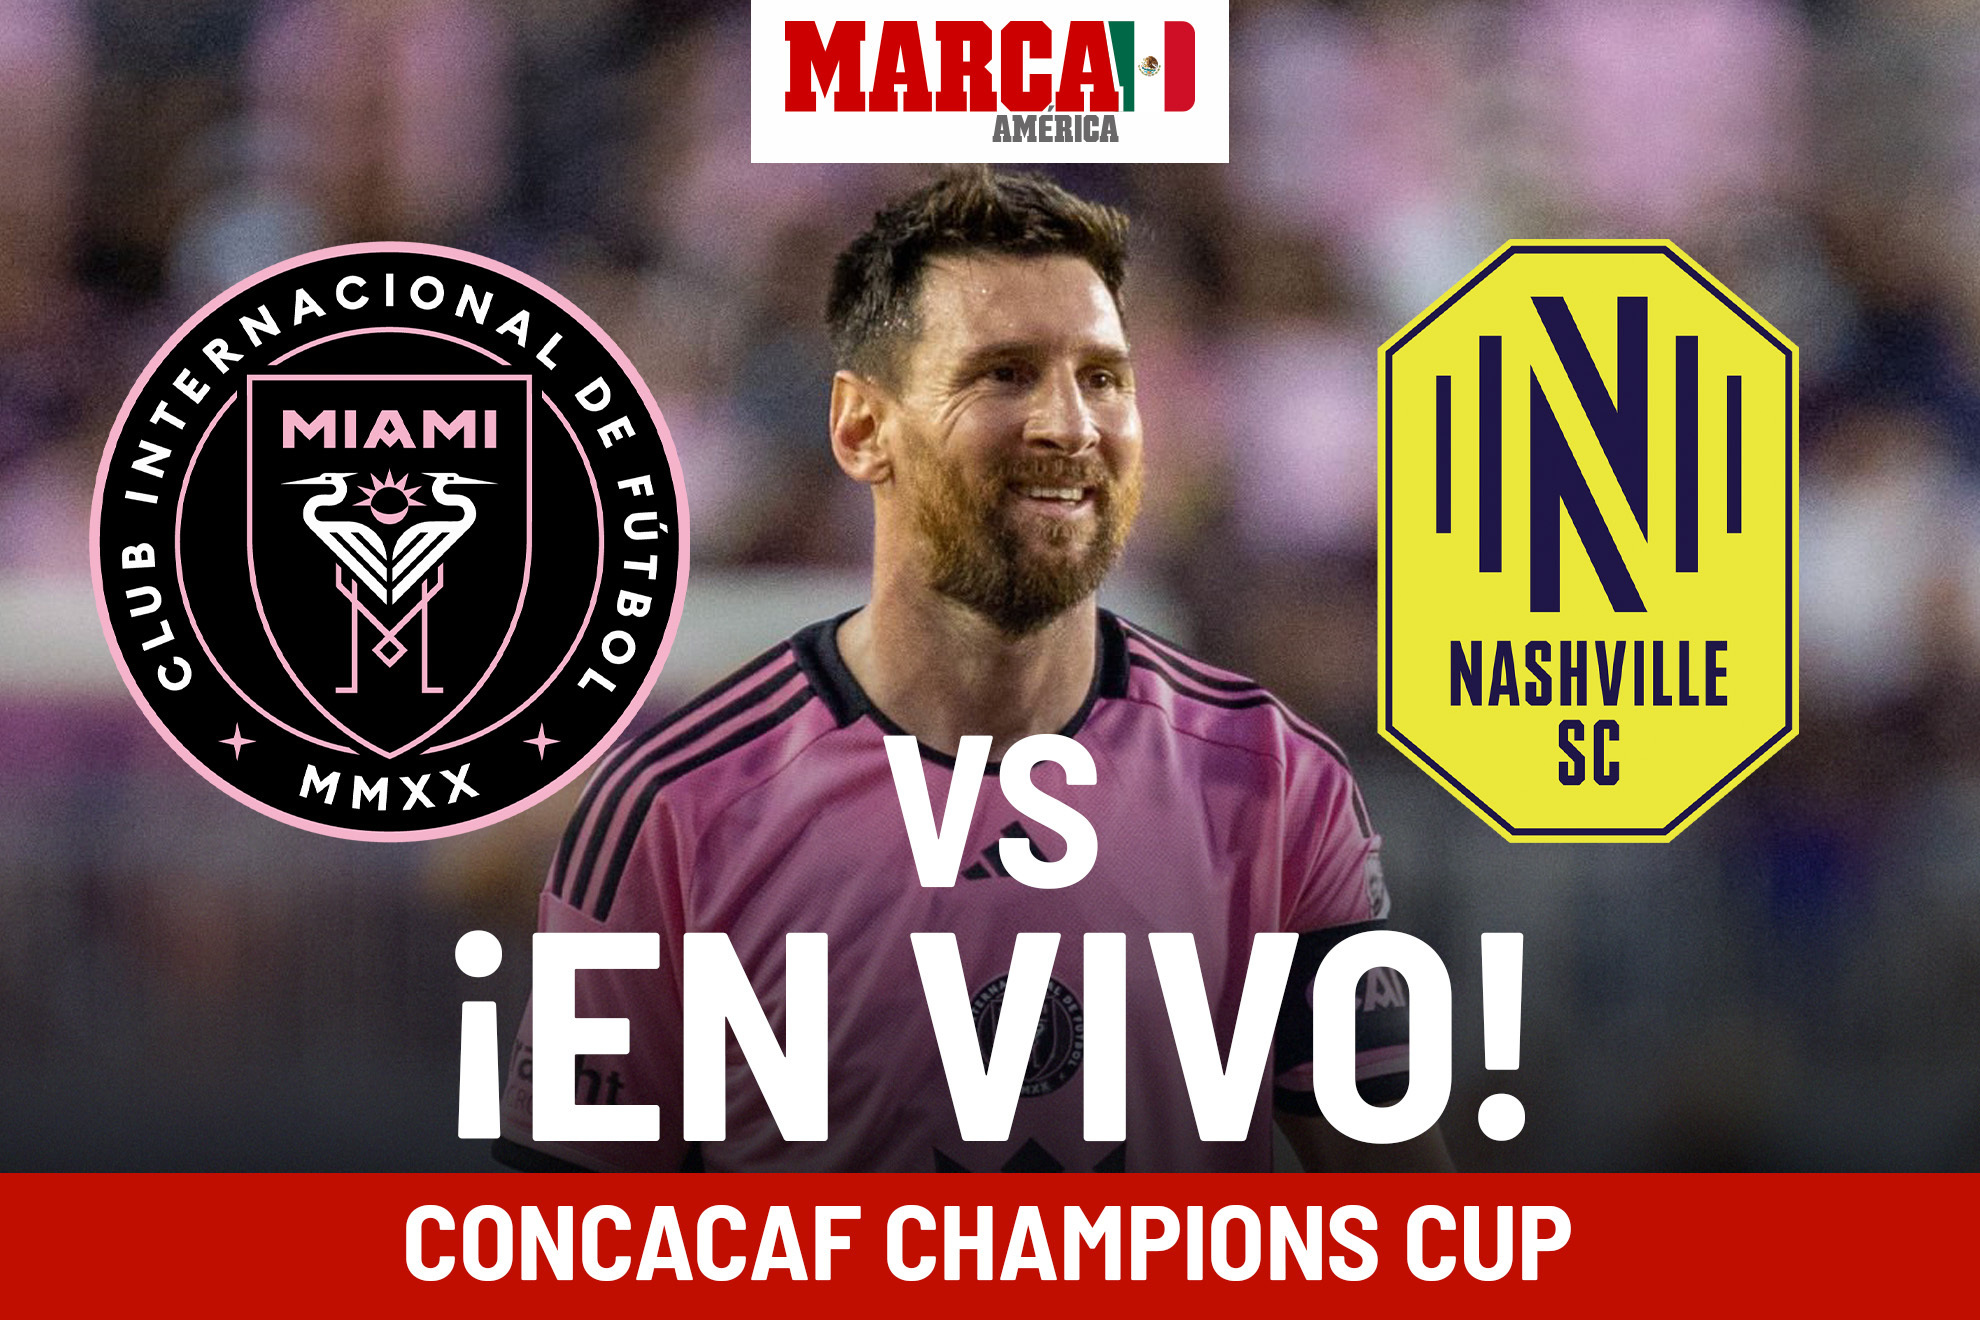 Inter Miami vs Nashville: Cmo qued el partido de Messi en Concachampions? - Resumen y goles